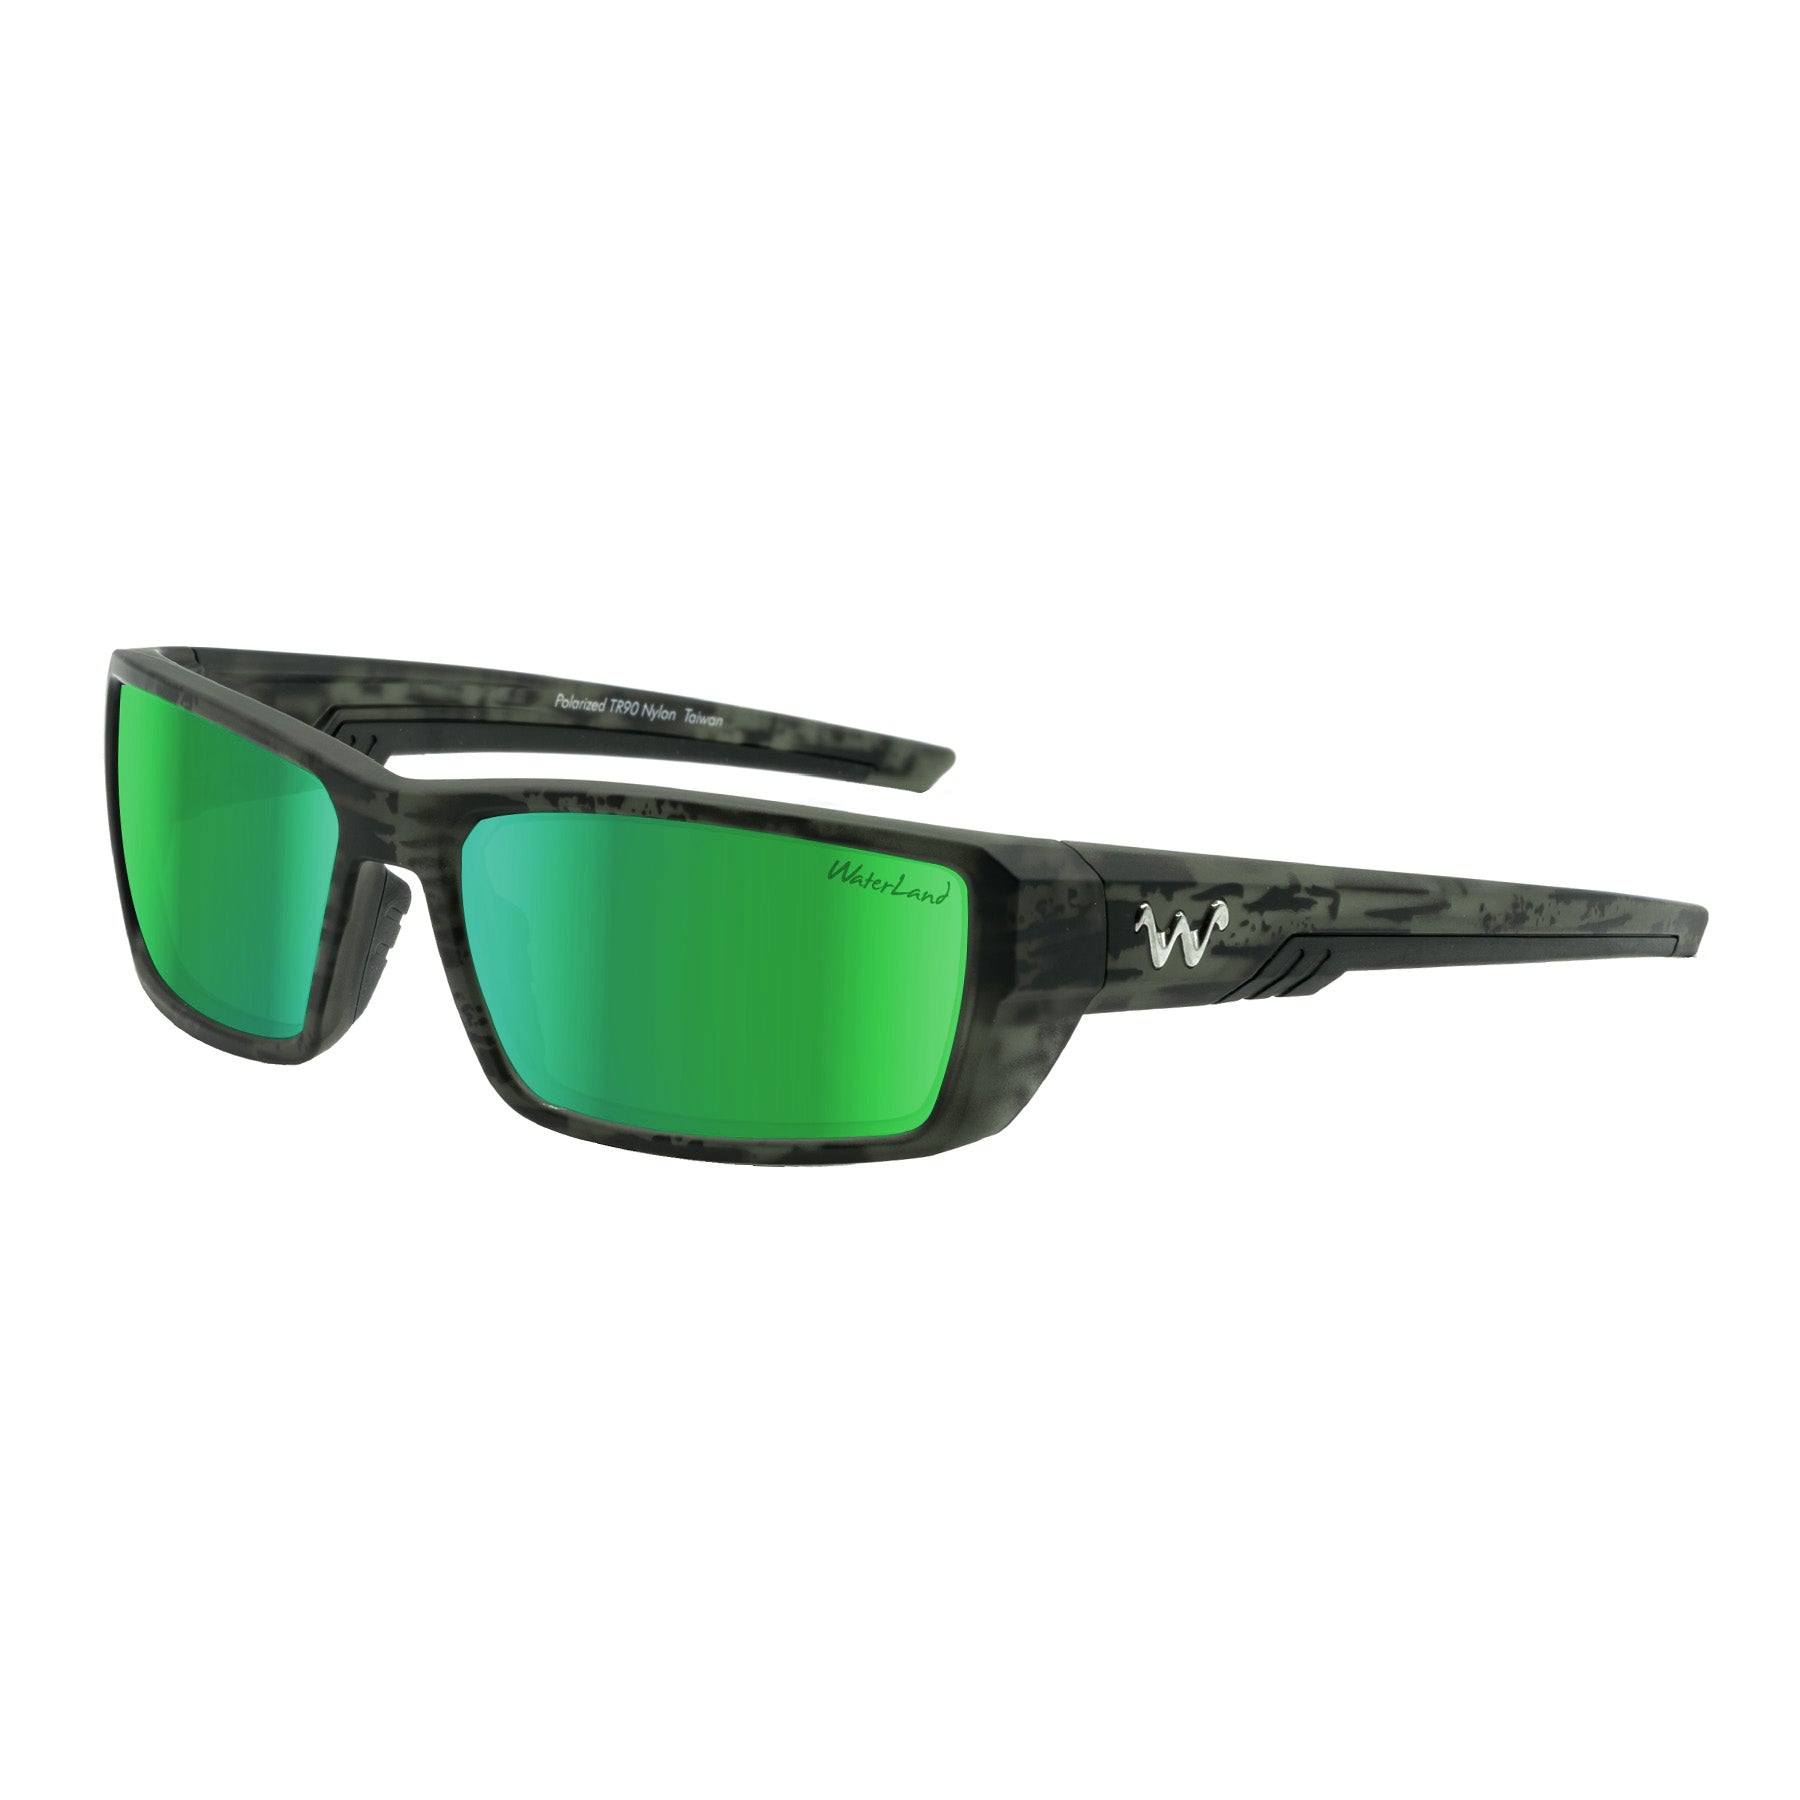 WaterLand Fishing Sunglasses - BedFishers Series 